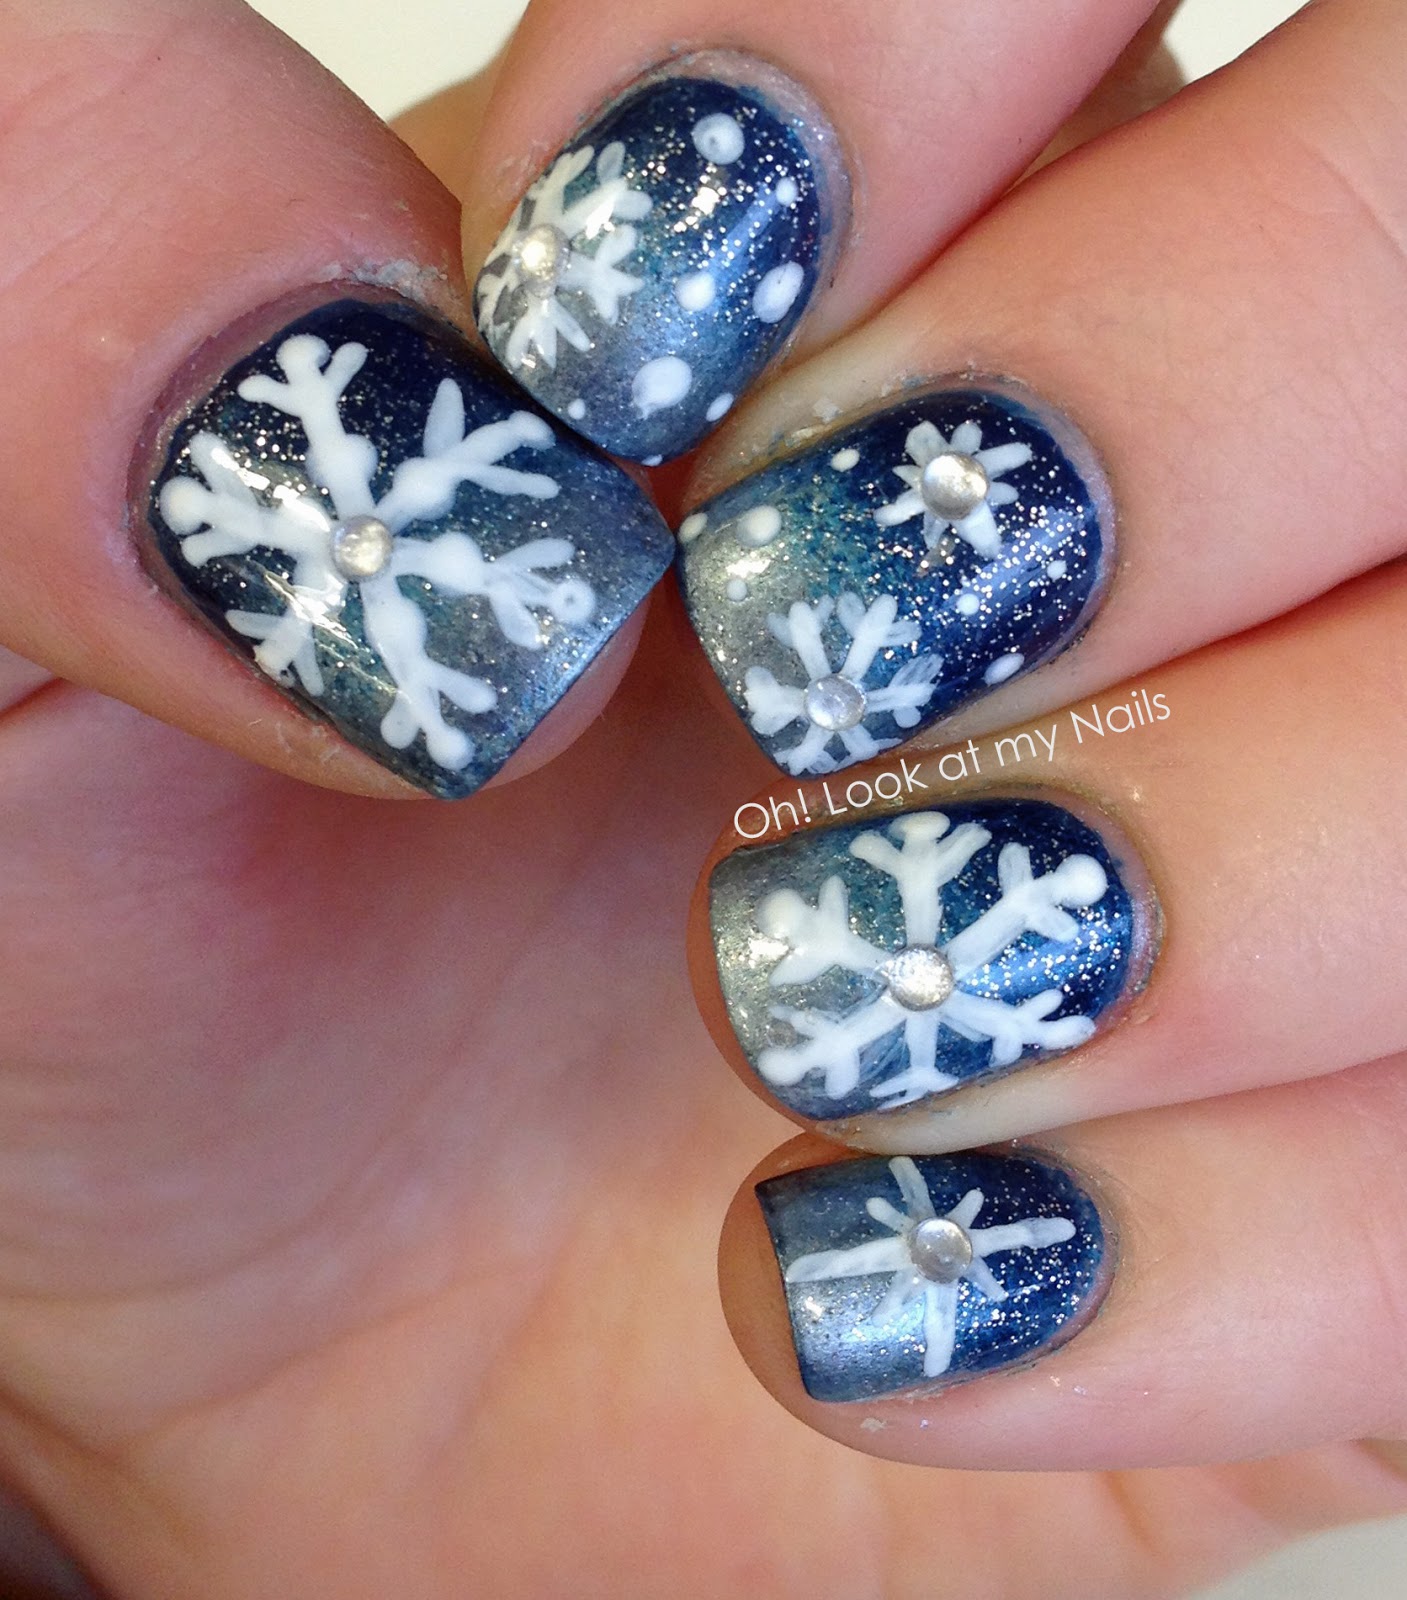 Oh! Look at my Nails Snowflake Nail Art